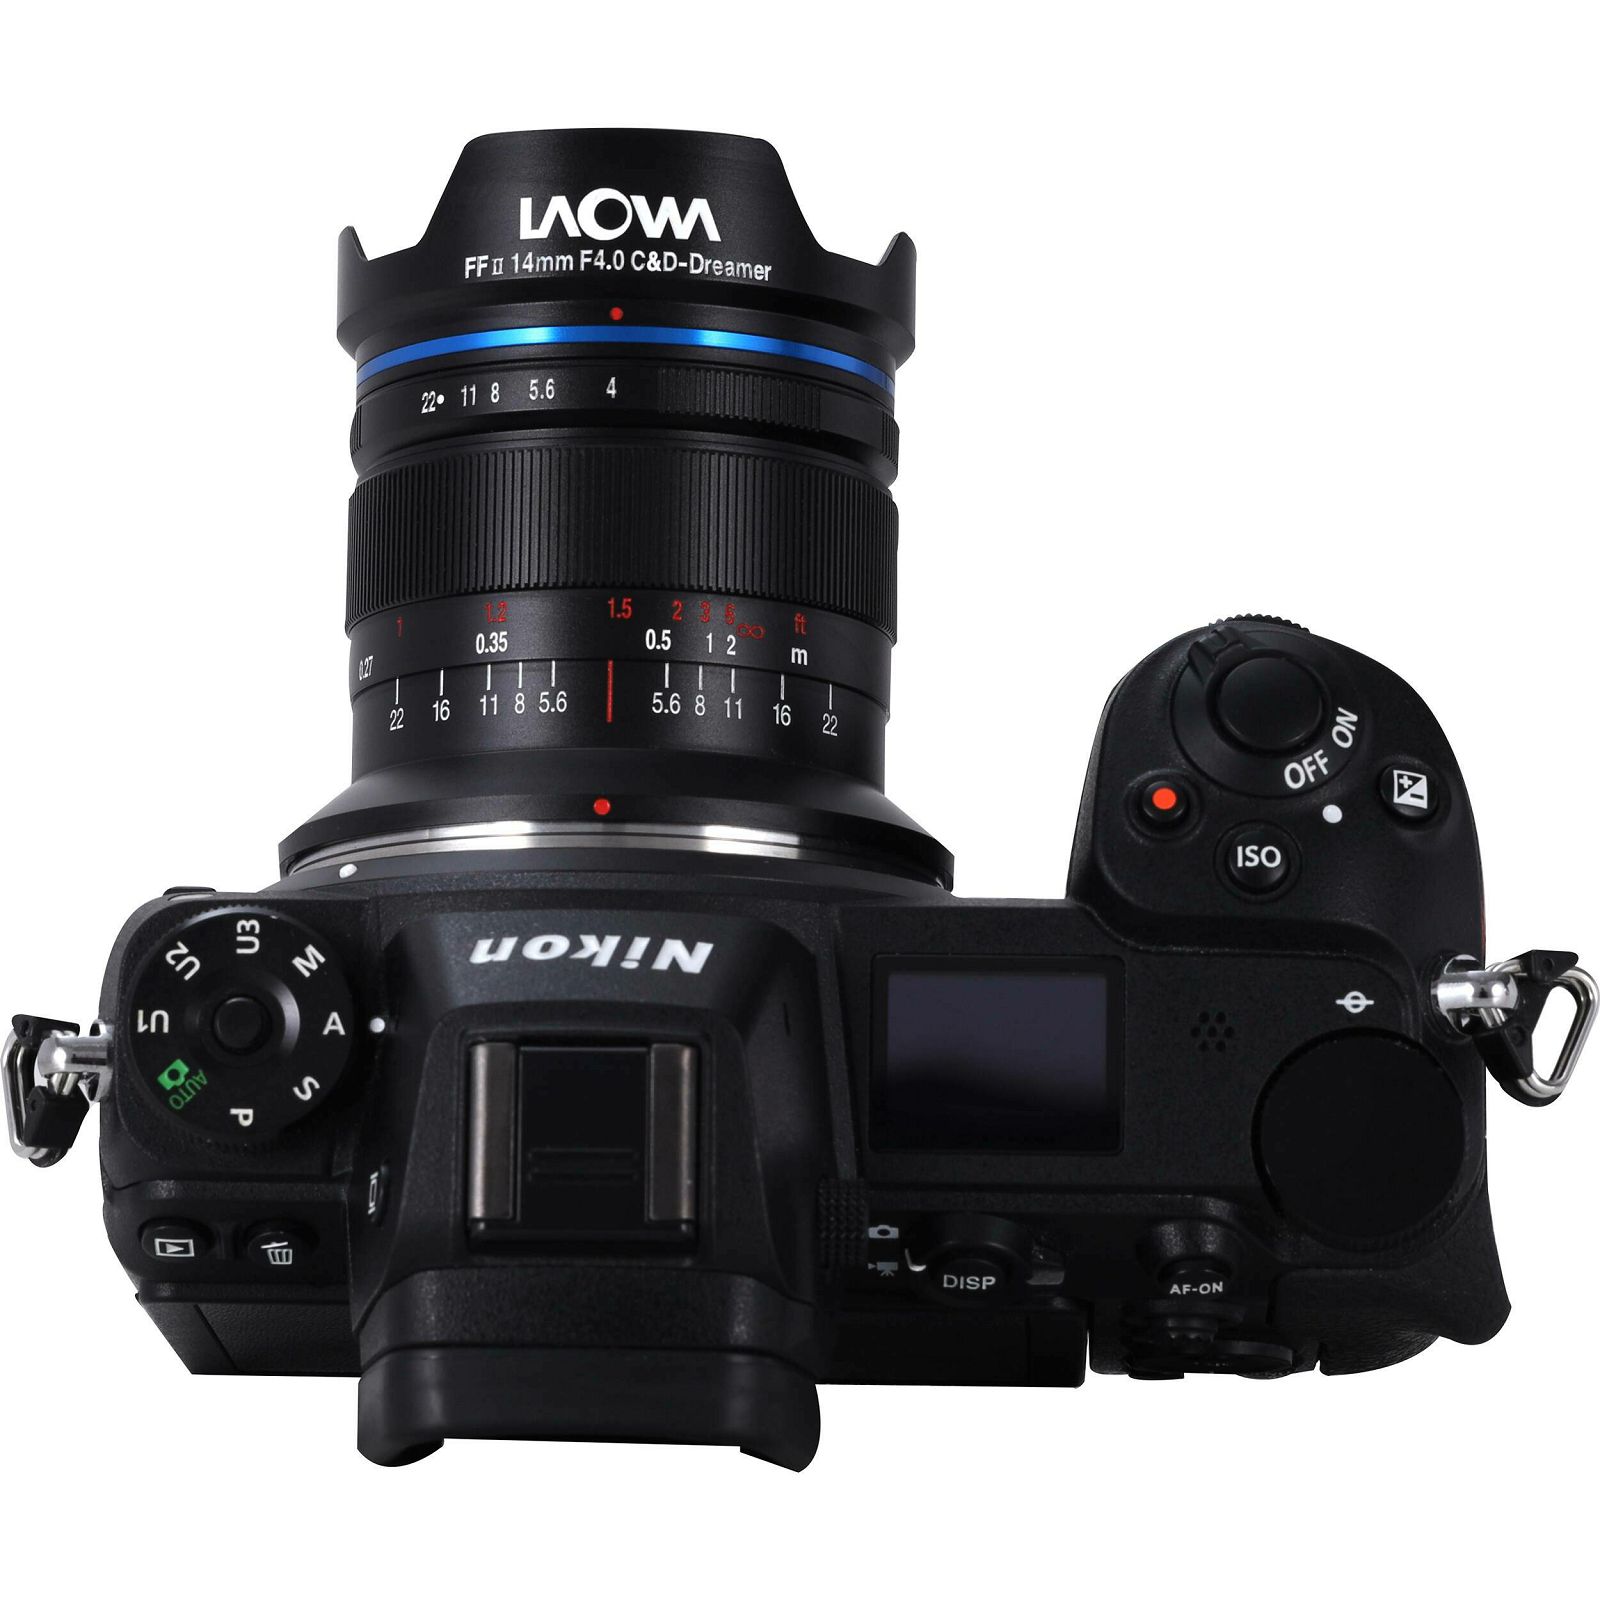 Venus Optics Laowa 14mm f4 FF RL Zero-D objektiv za Nikon Z